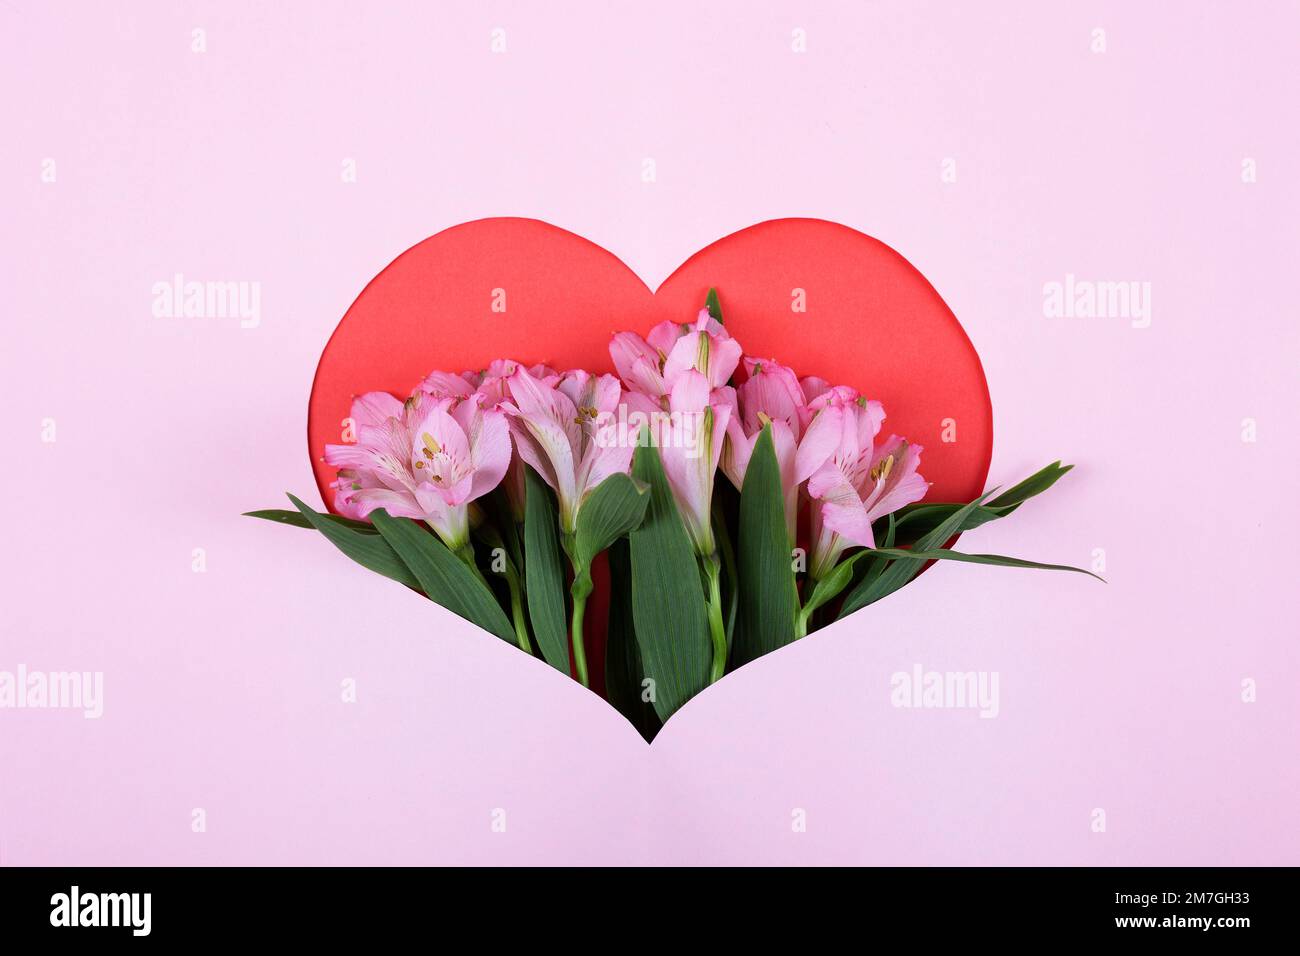 Uber die Zusammensetzung der lila Blüten Alstroemeria auf einem rosafarbenen Herzhintergrund. Valentinstagskonzept, Grüße für einen geliebten Menschen, Draufsicht Stockfoto